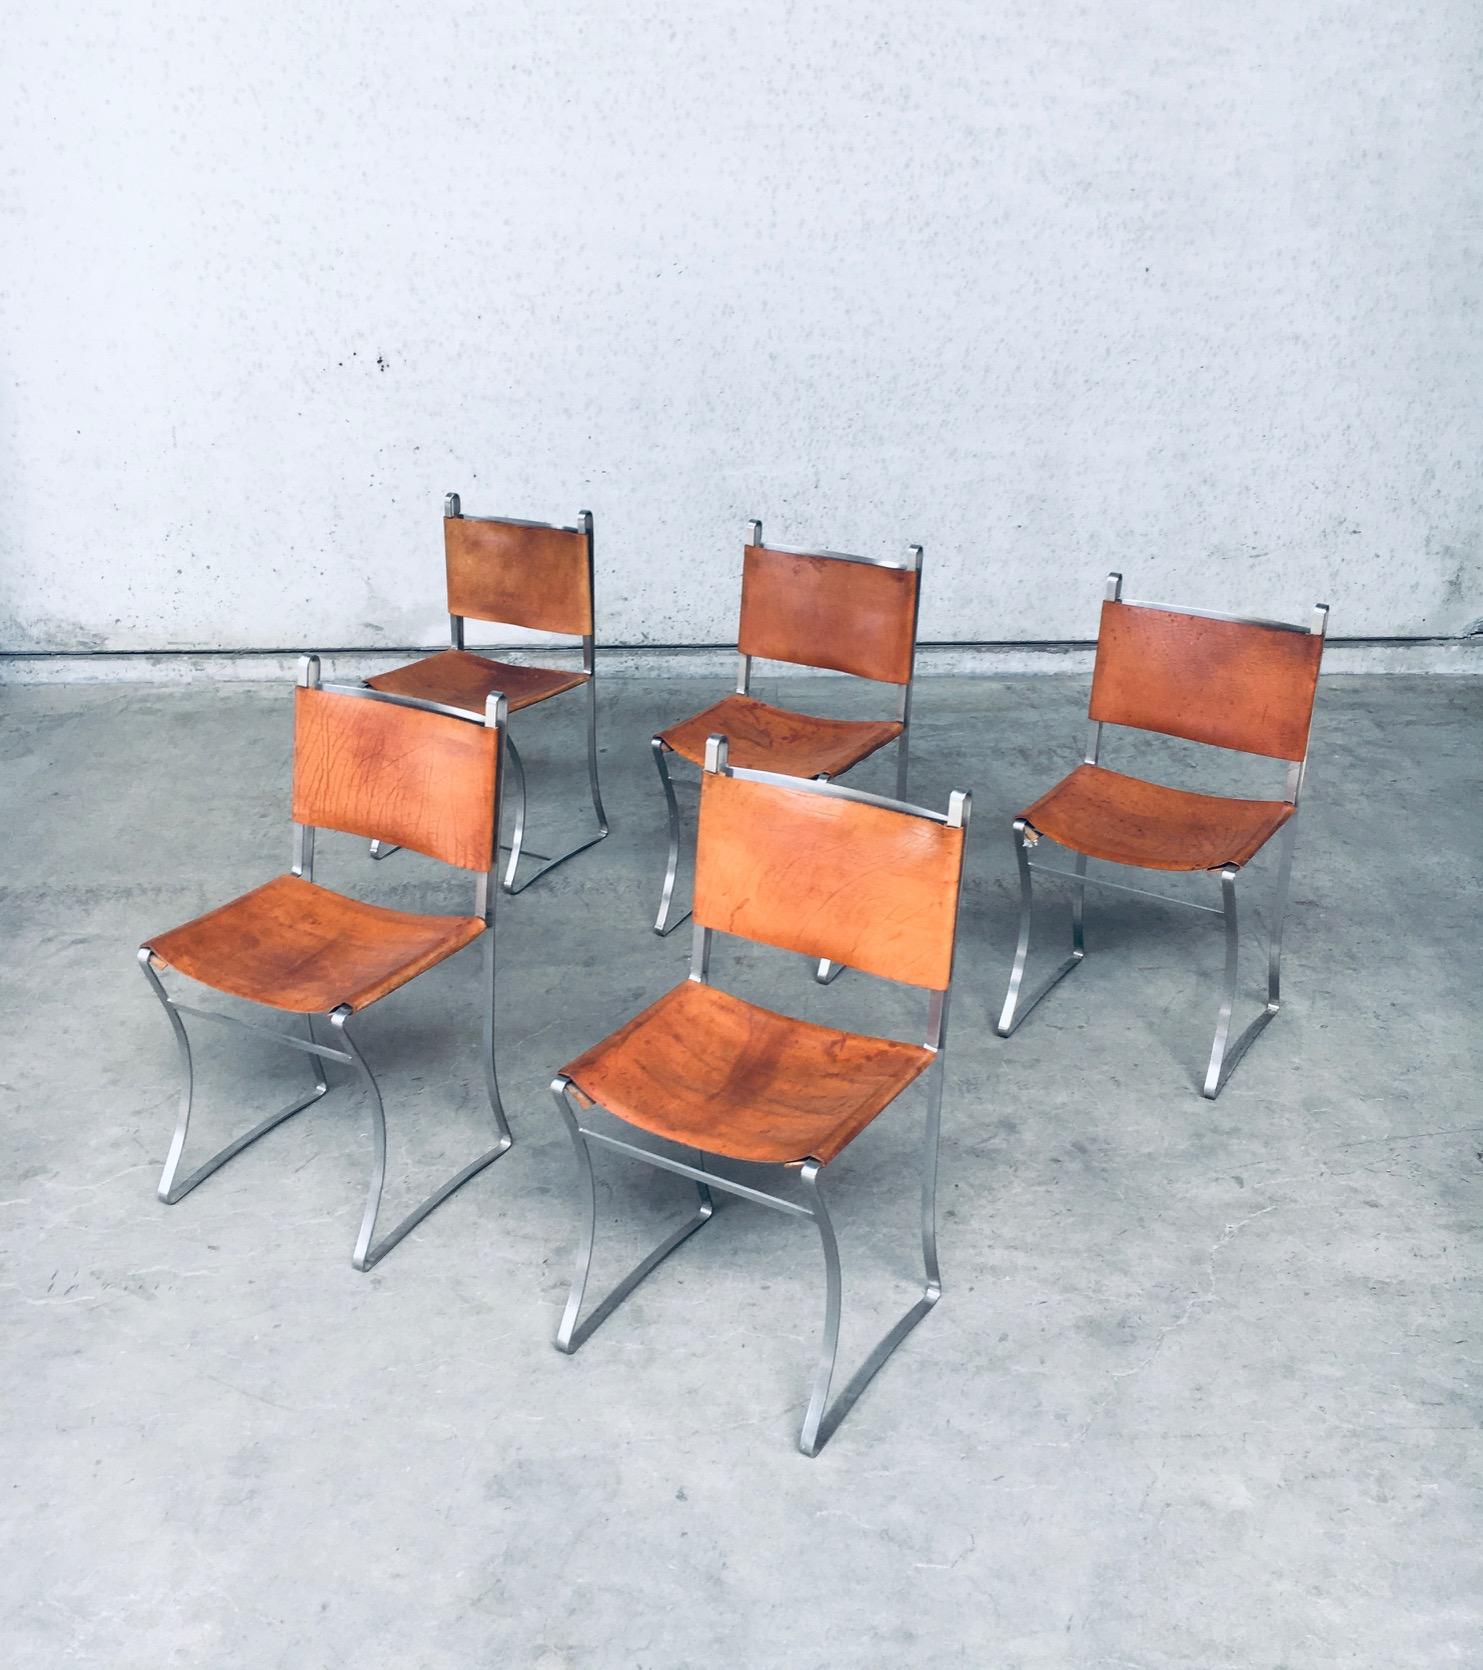 Ensemble de 5 chaises en cuir de conception française vintage, fabriquées en France dans les années 1970. Assise et dossier en cuir épais de selle sur une base en aluminium. Le cuir est maintenu par une corde sur le siège, et rivé sur le dossier. Le